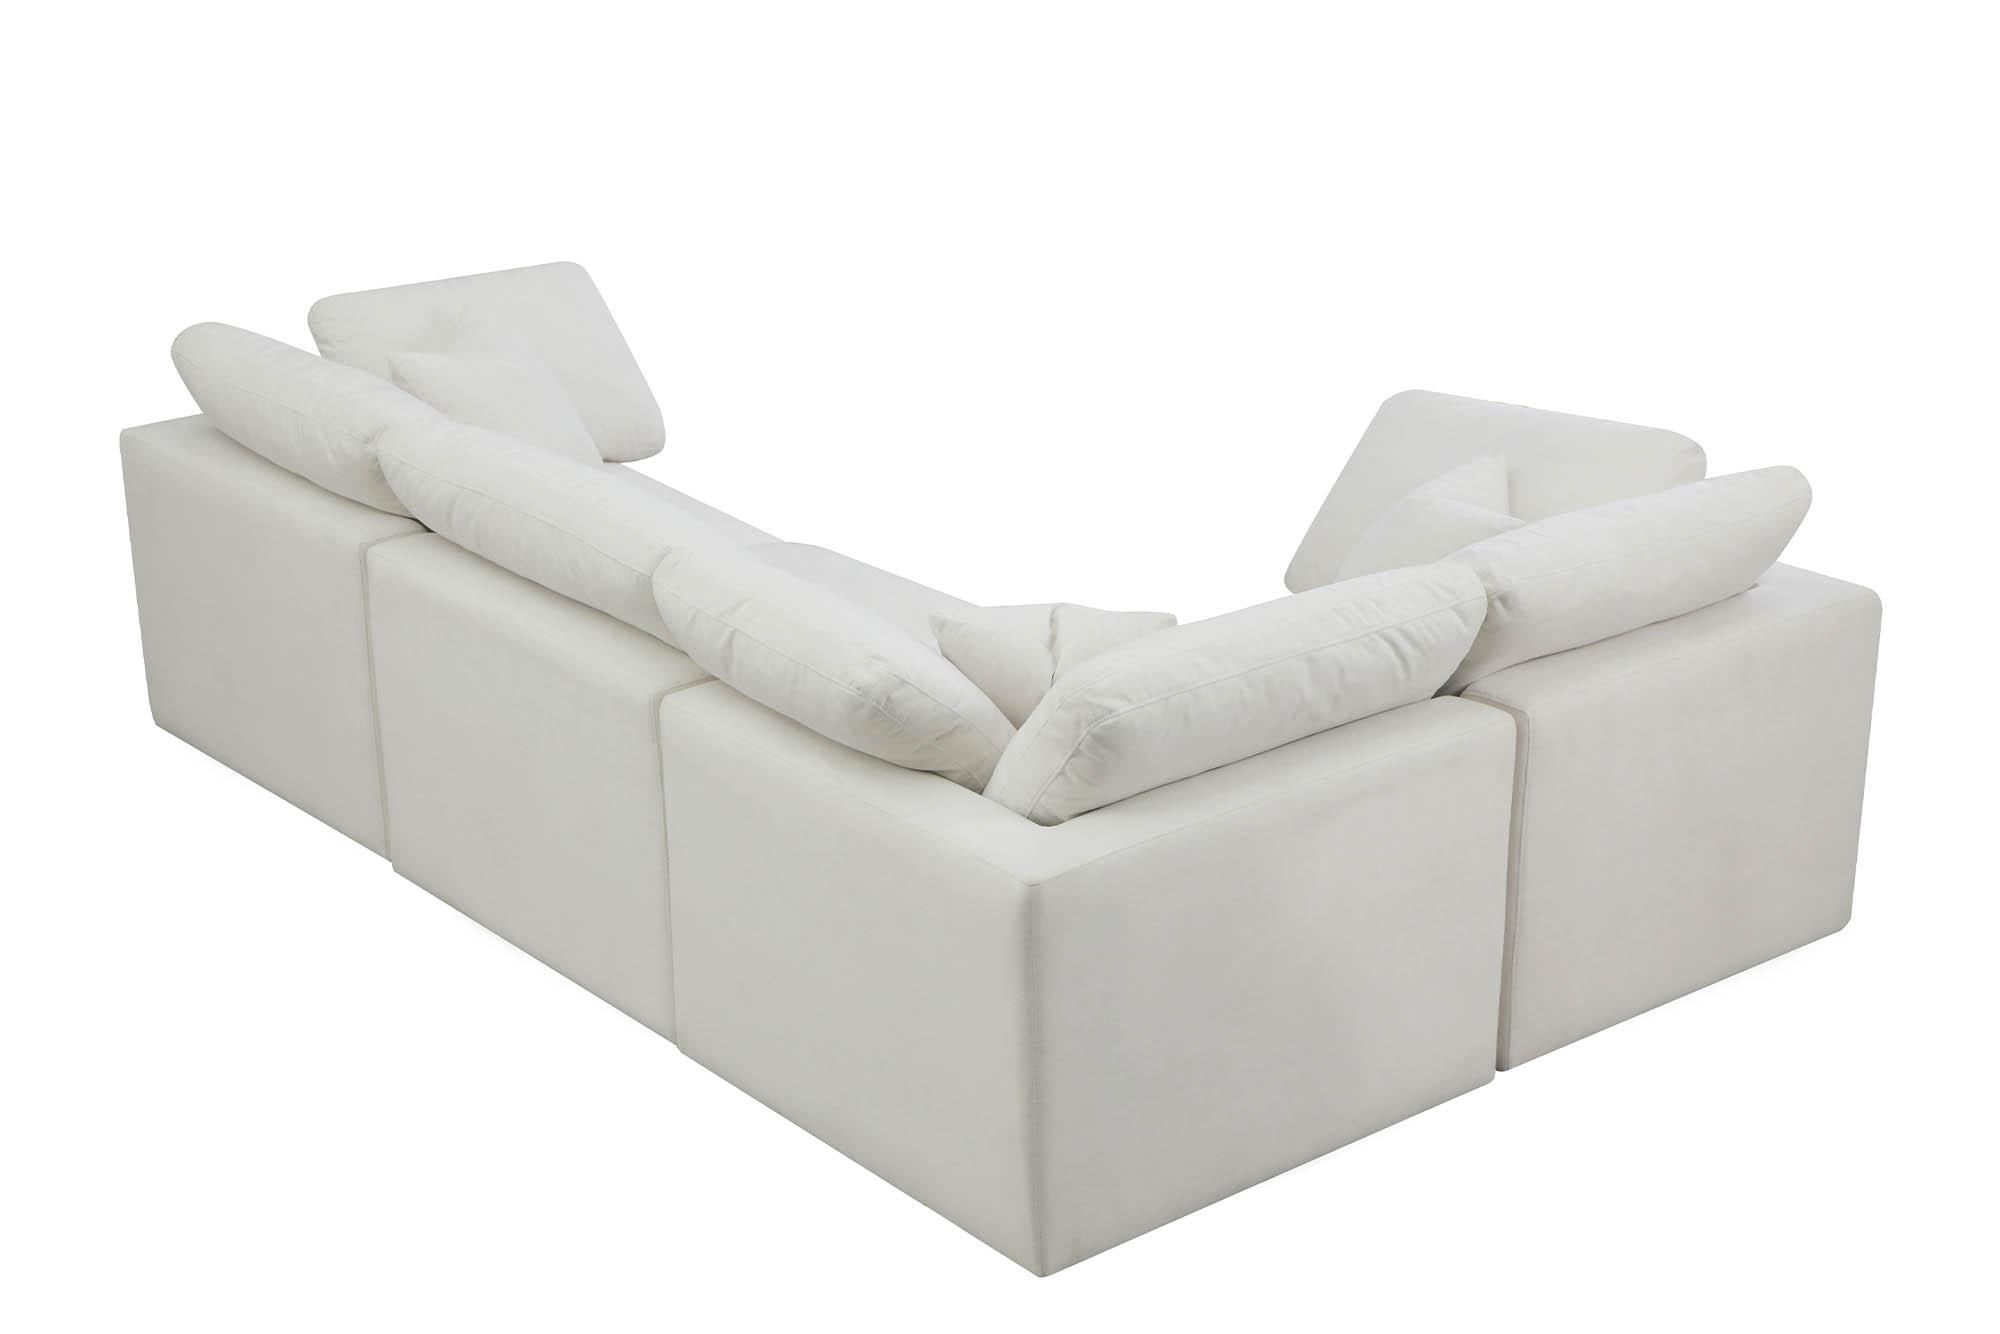 

    
Meridian Furniture 602Cream-Sec4C Modular Sectional Sofa Cream 602Cream-Sec4C
